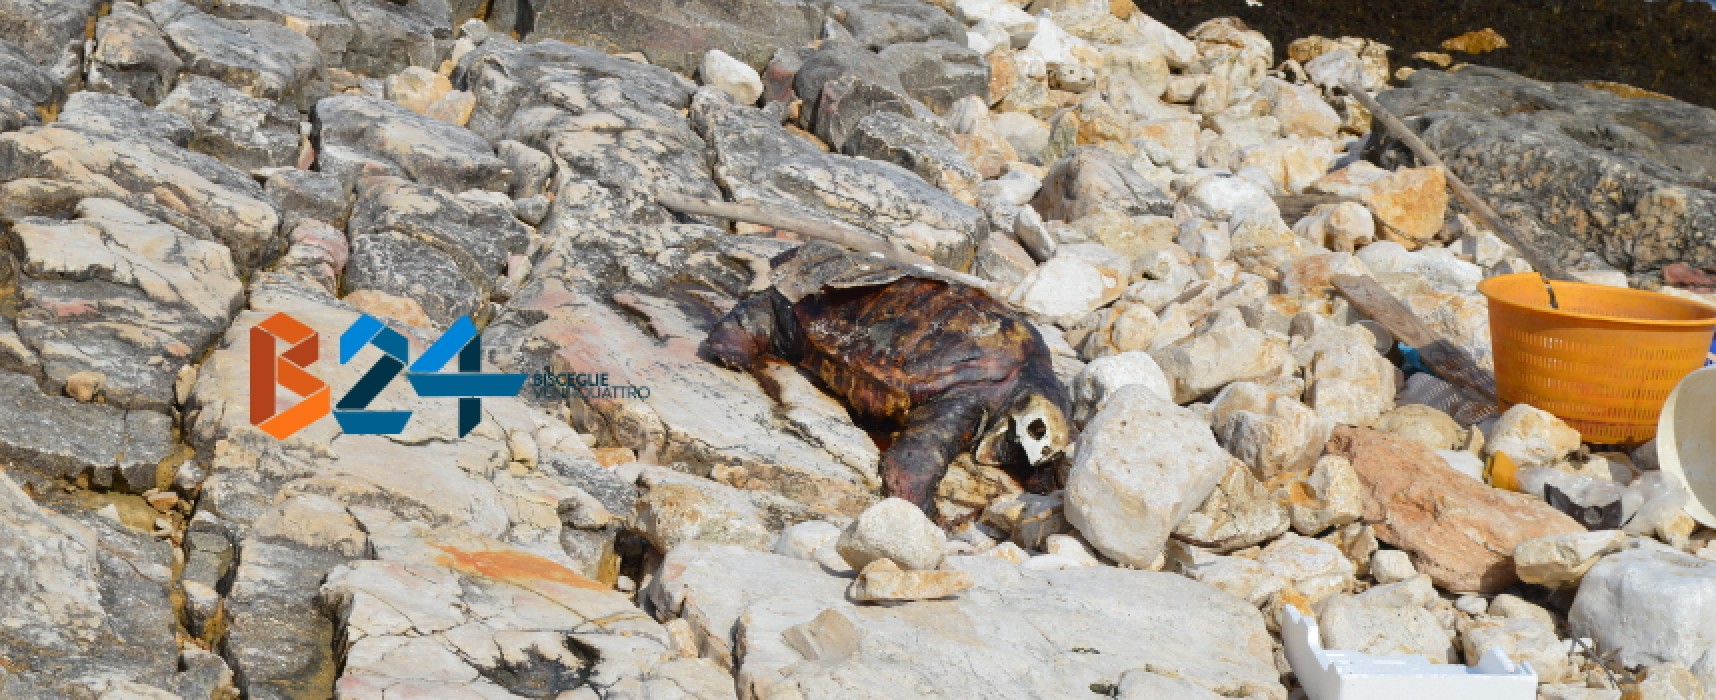 Carcassa di tartaruga spiaggiata da giorni a Ripalta, interviene Centro di Recupero Tartarughe / FOTO